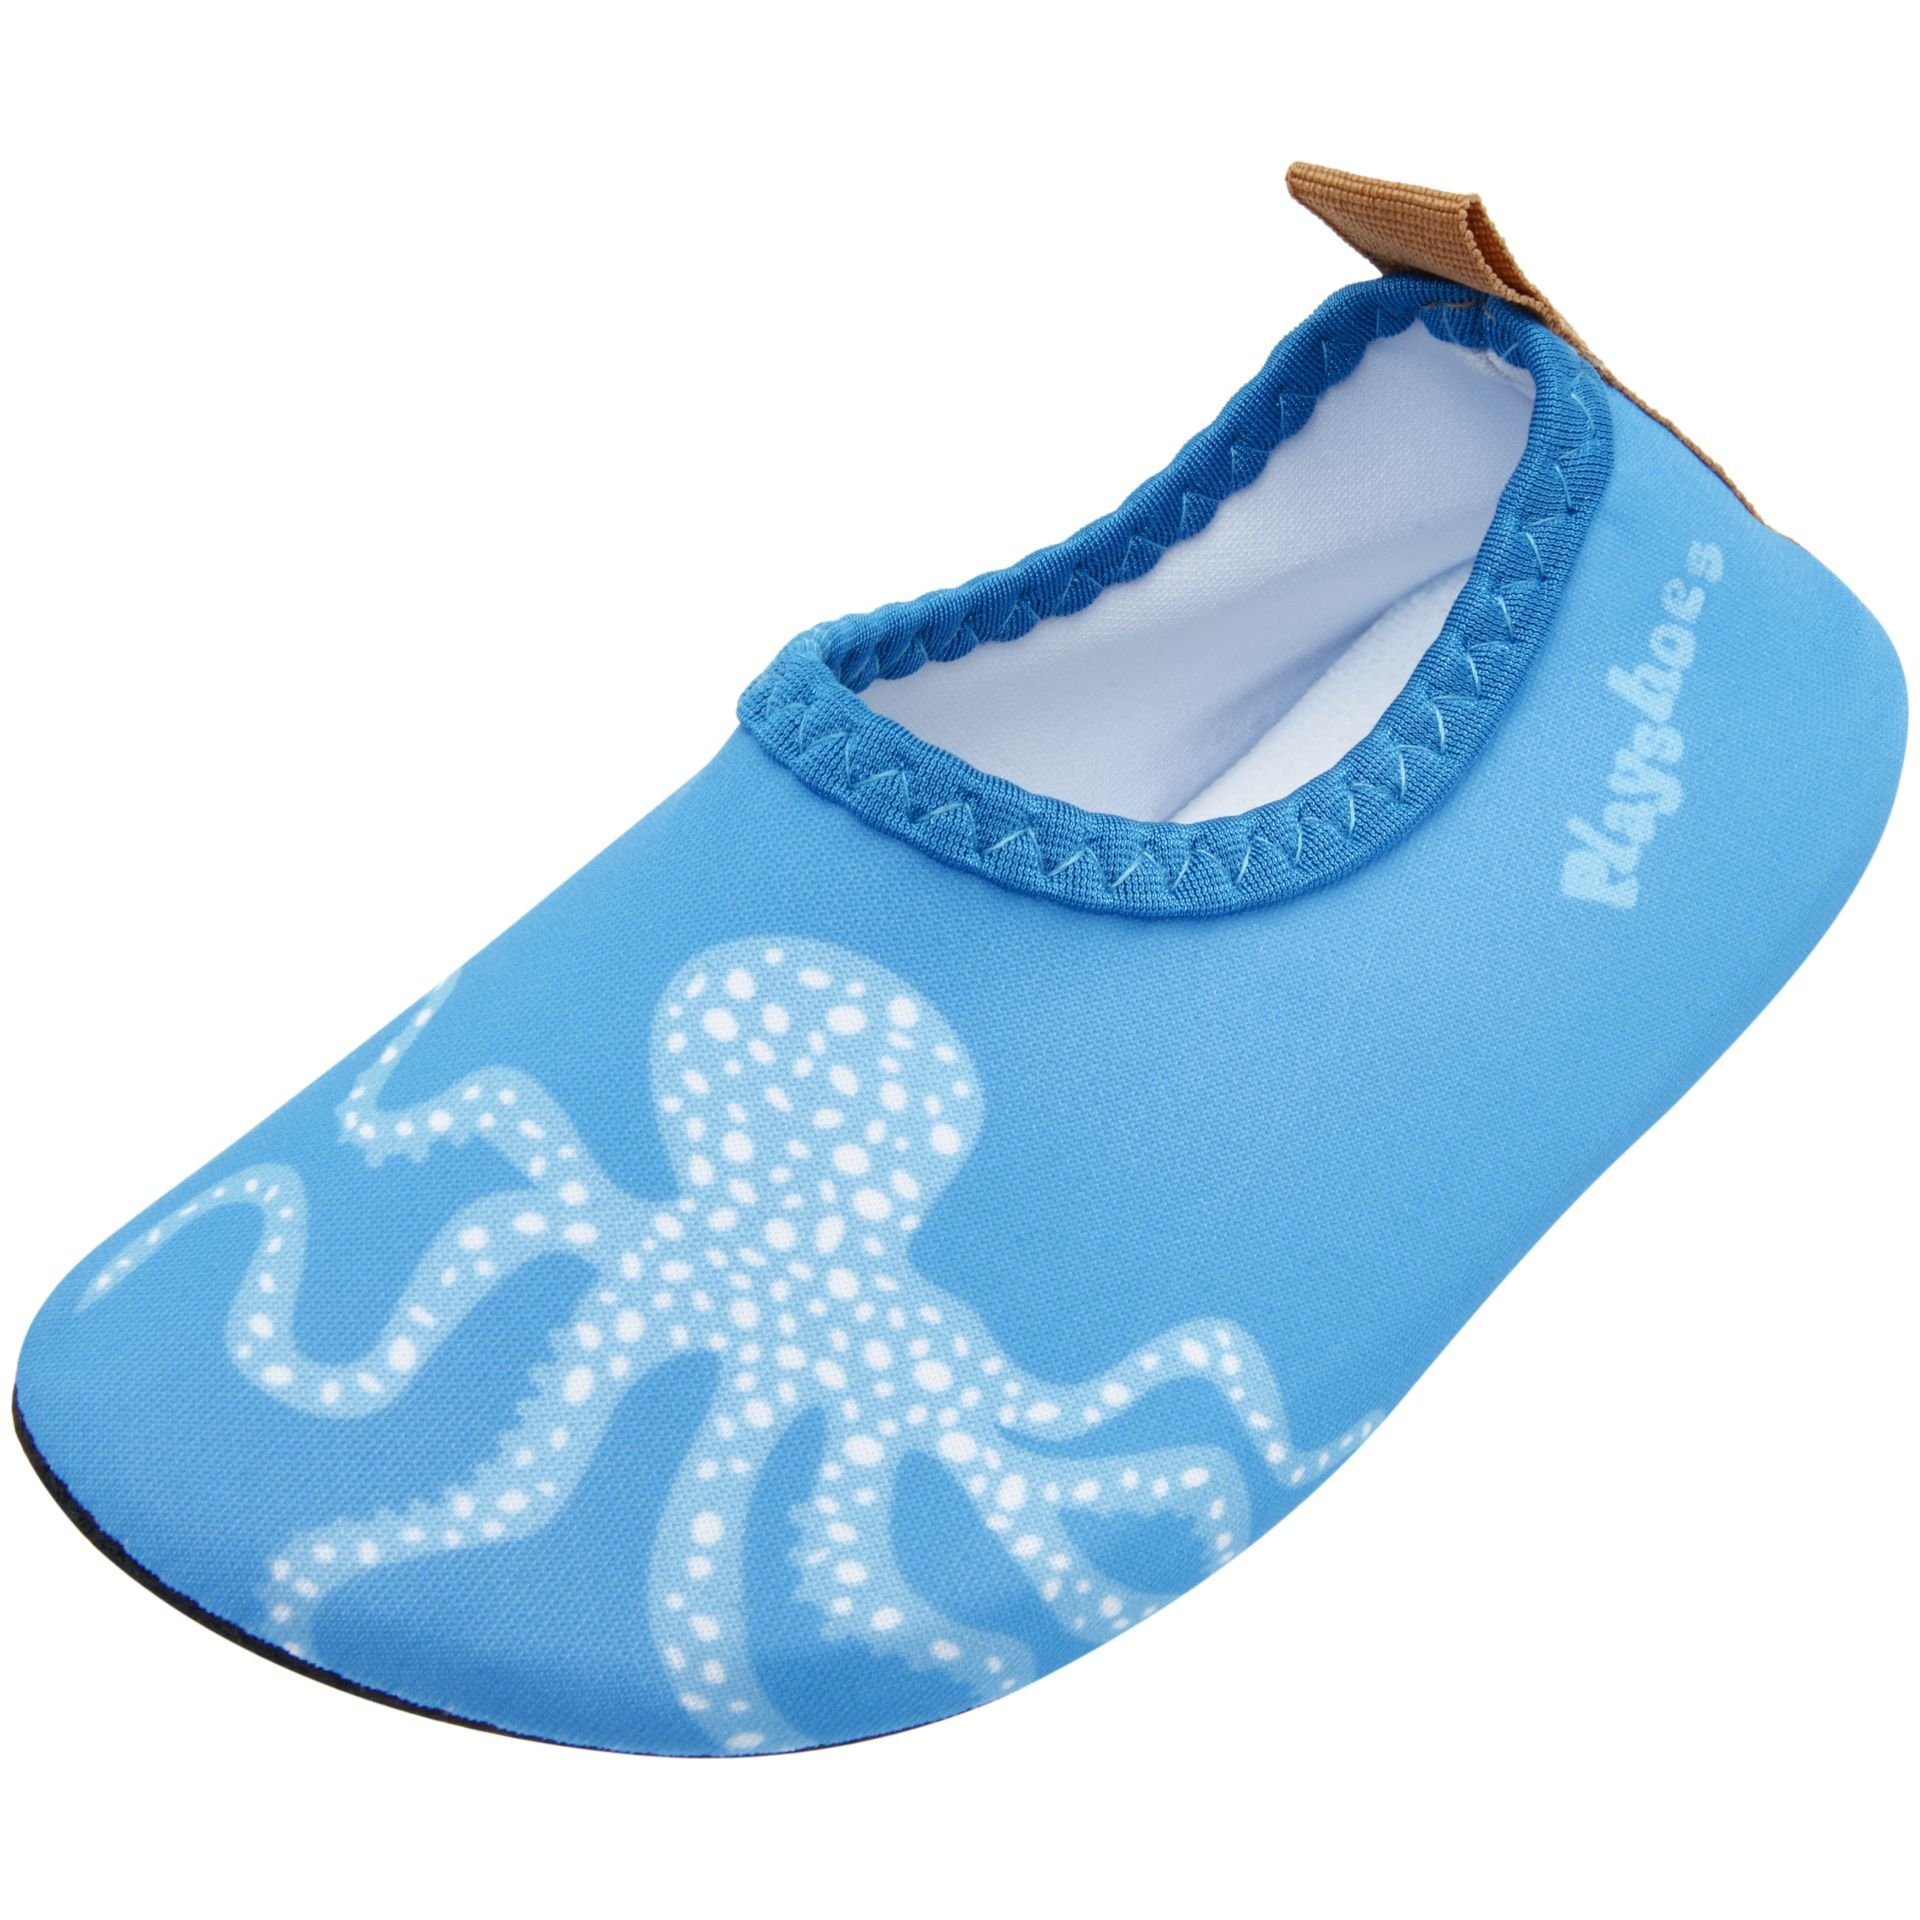 Gants polaire bébé Playshoes - Ceintures - Accessoires Mode